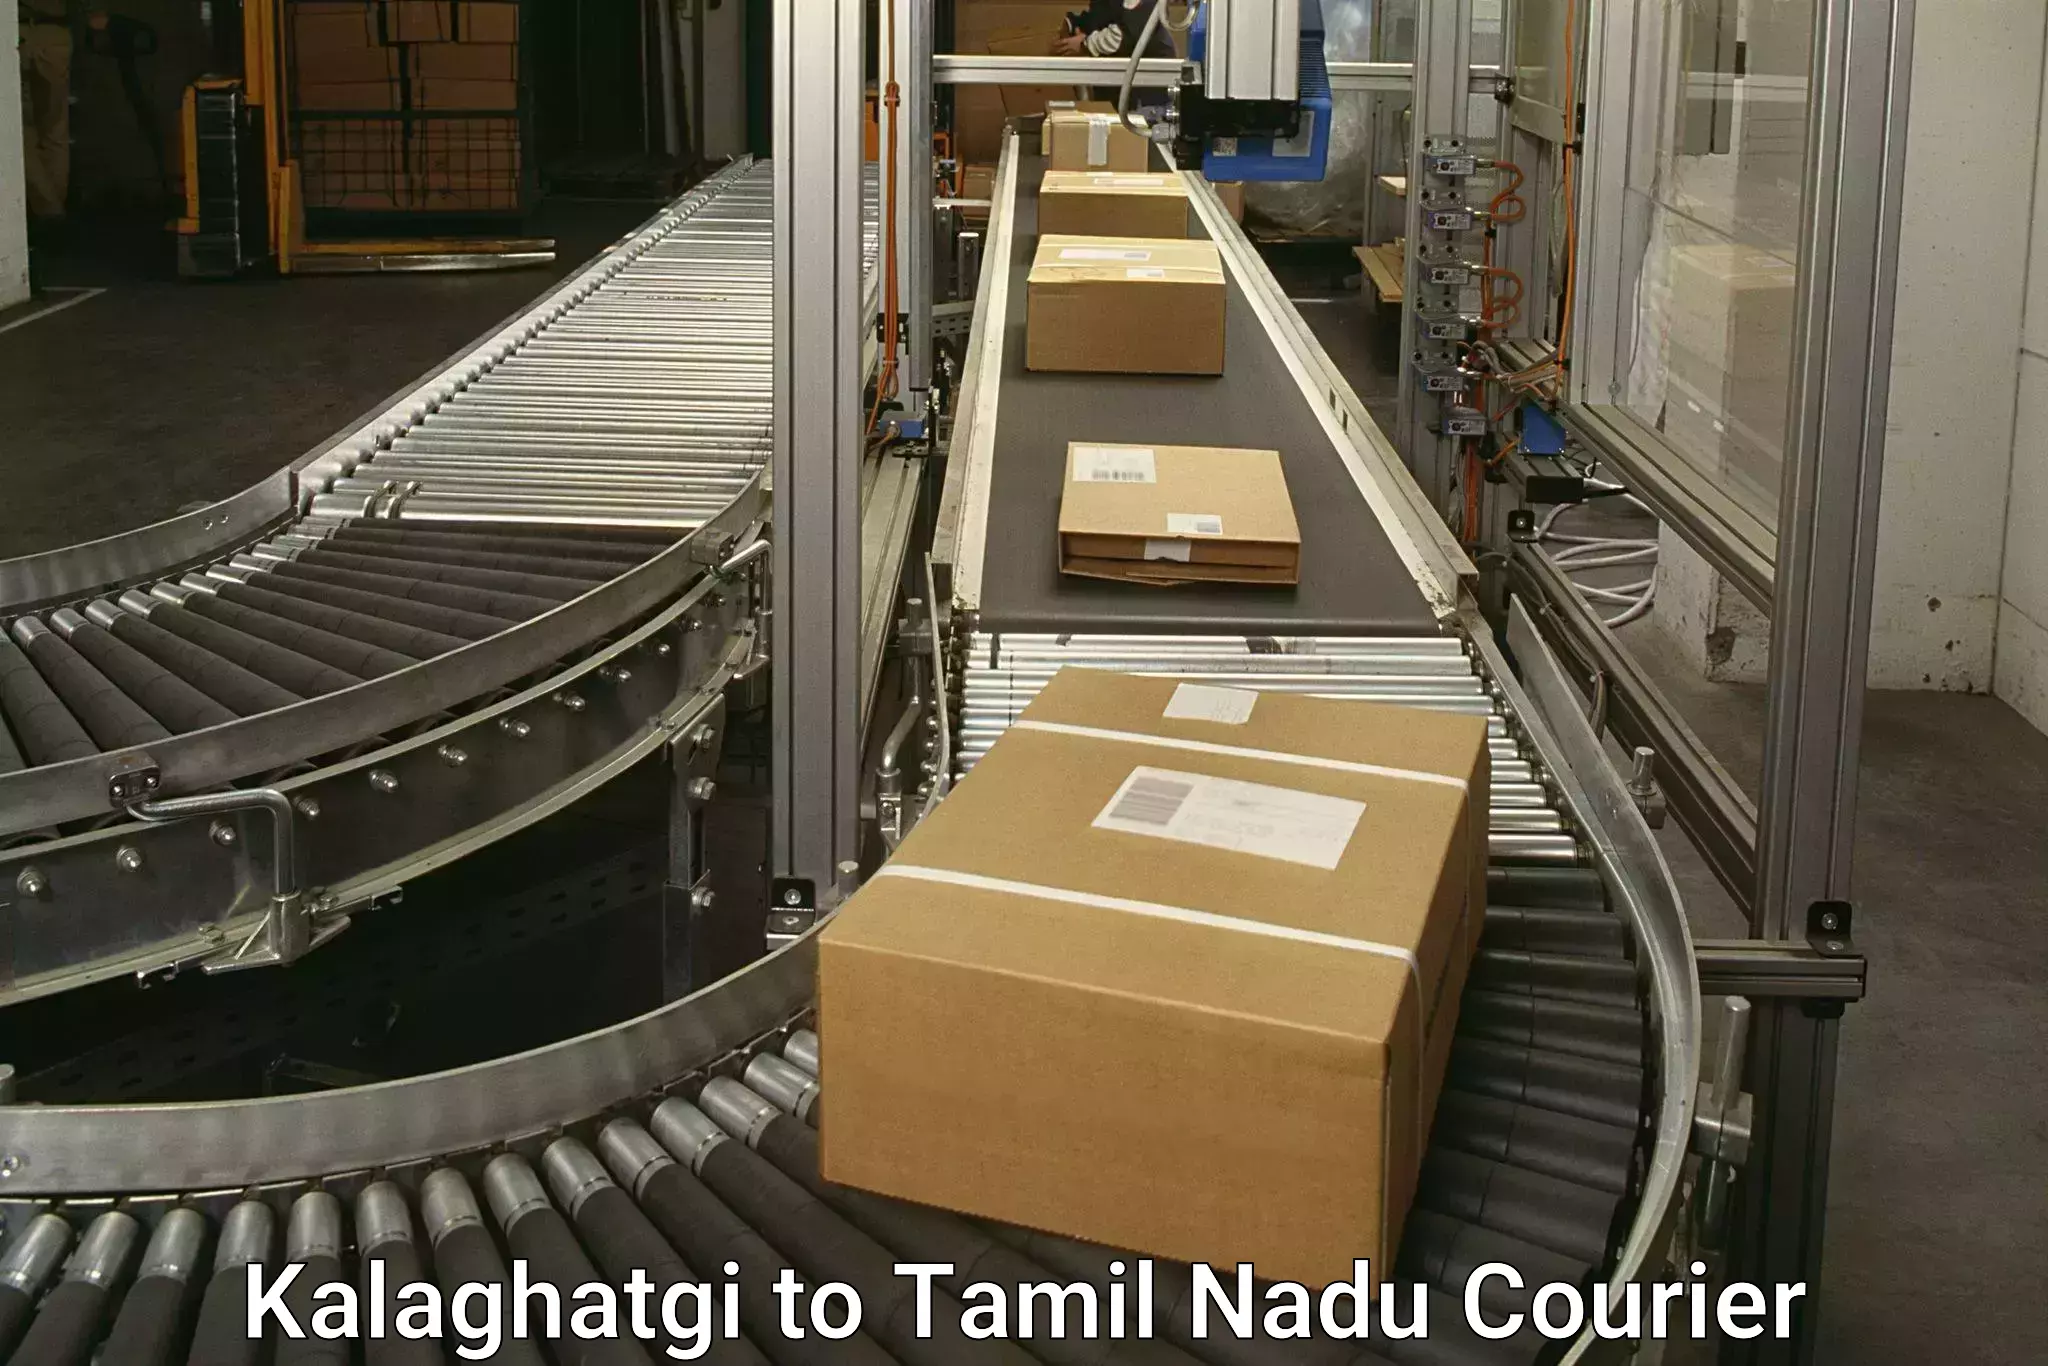 Pharmaceutical courier Kalaghatgi to Chennai Port